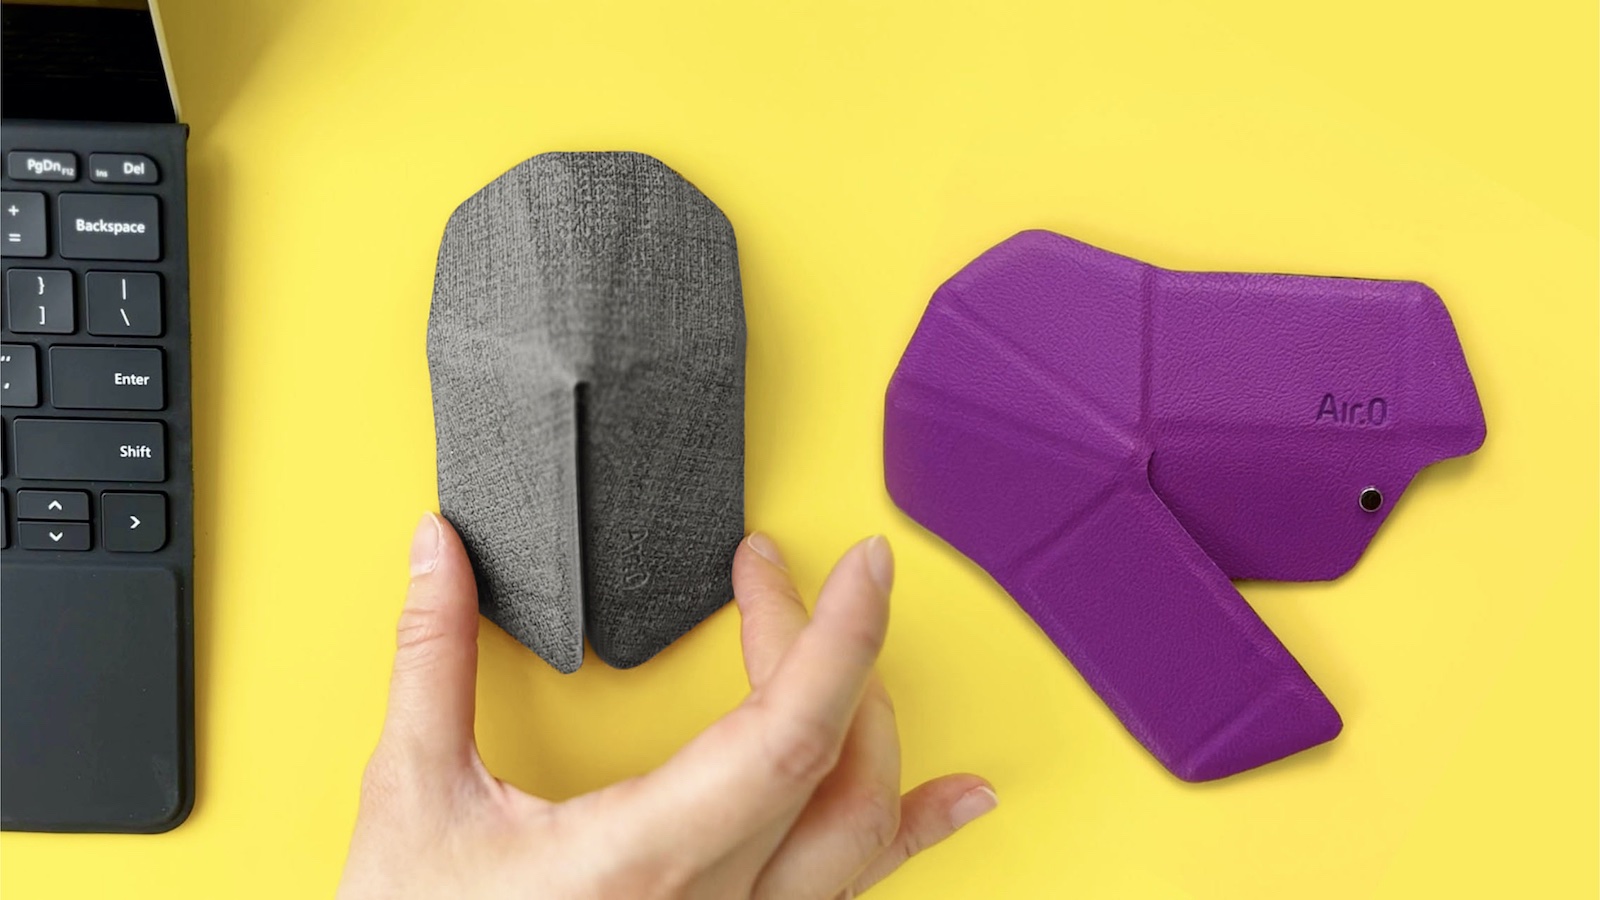 Air.0 - wyjątkowa mysz origami o grubości mniejszej niż 0,5 cm, która składa się w kilka sekund i działa przez 3 miesiące na jednym ładowaniu